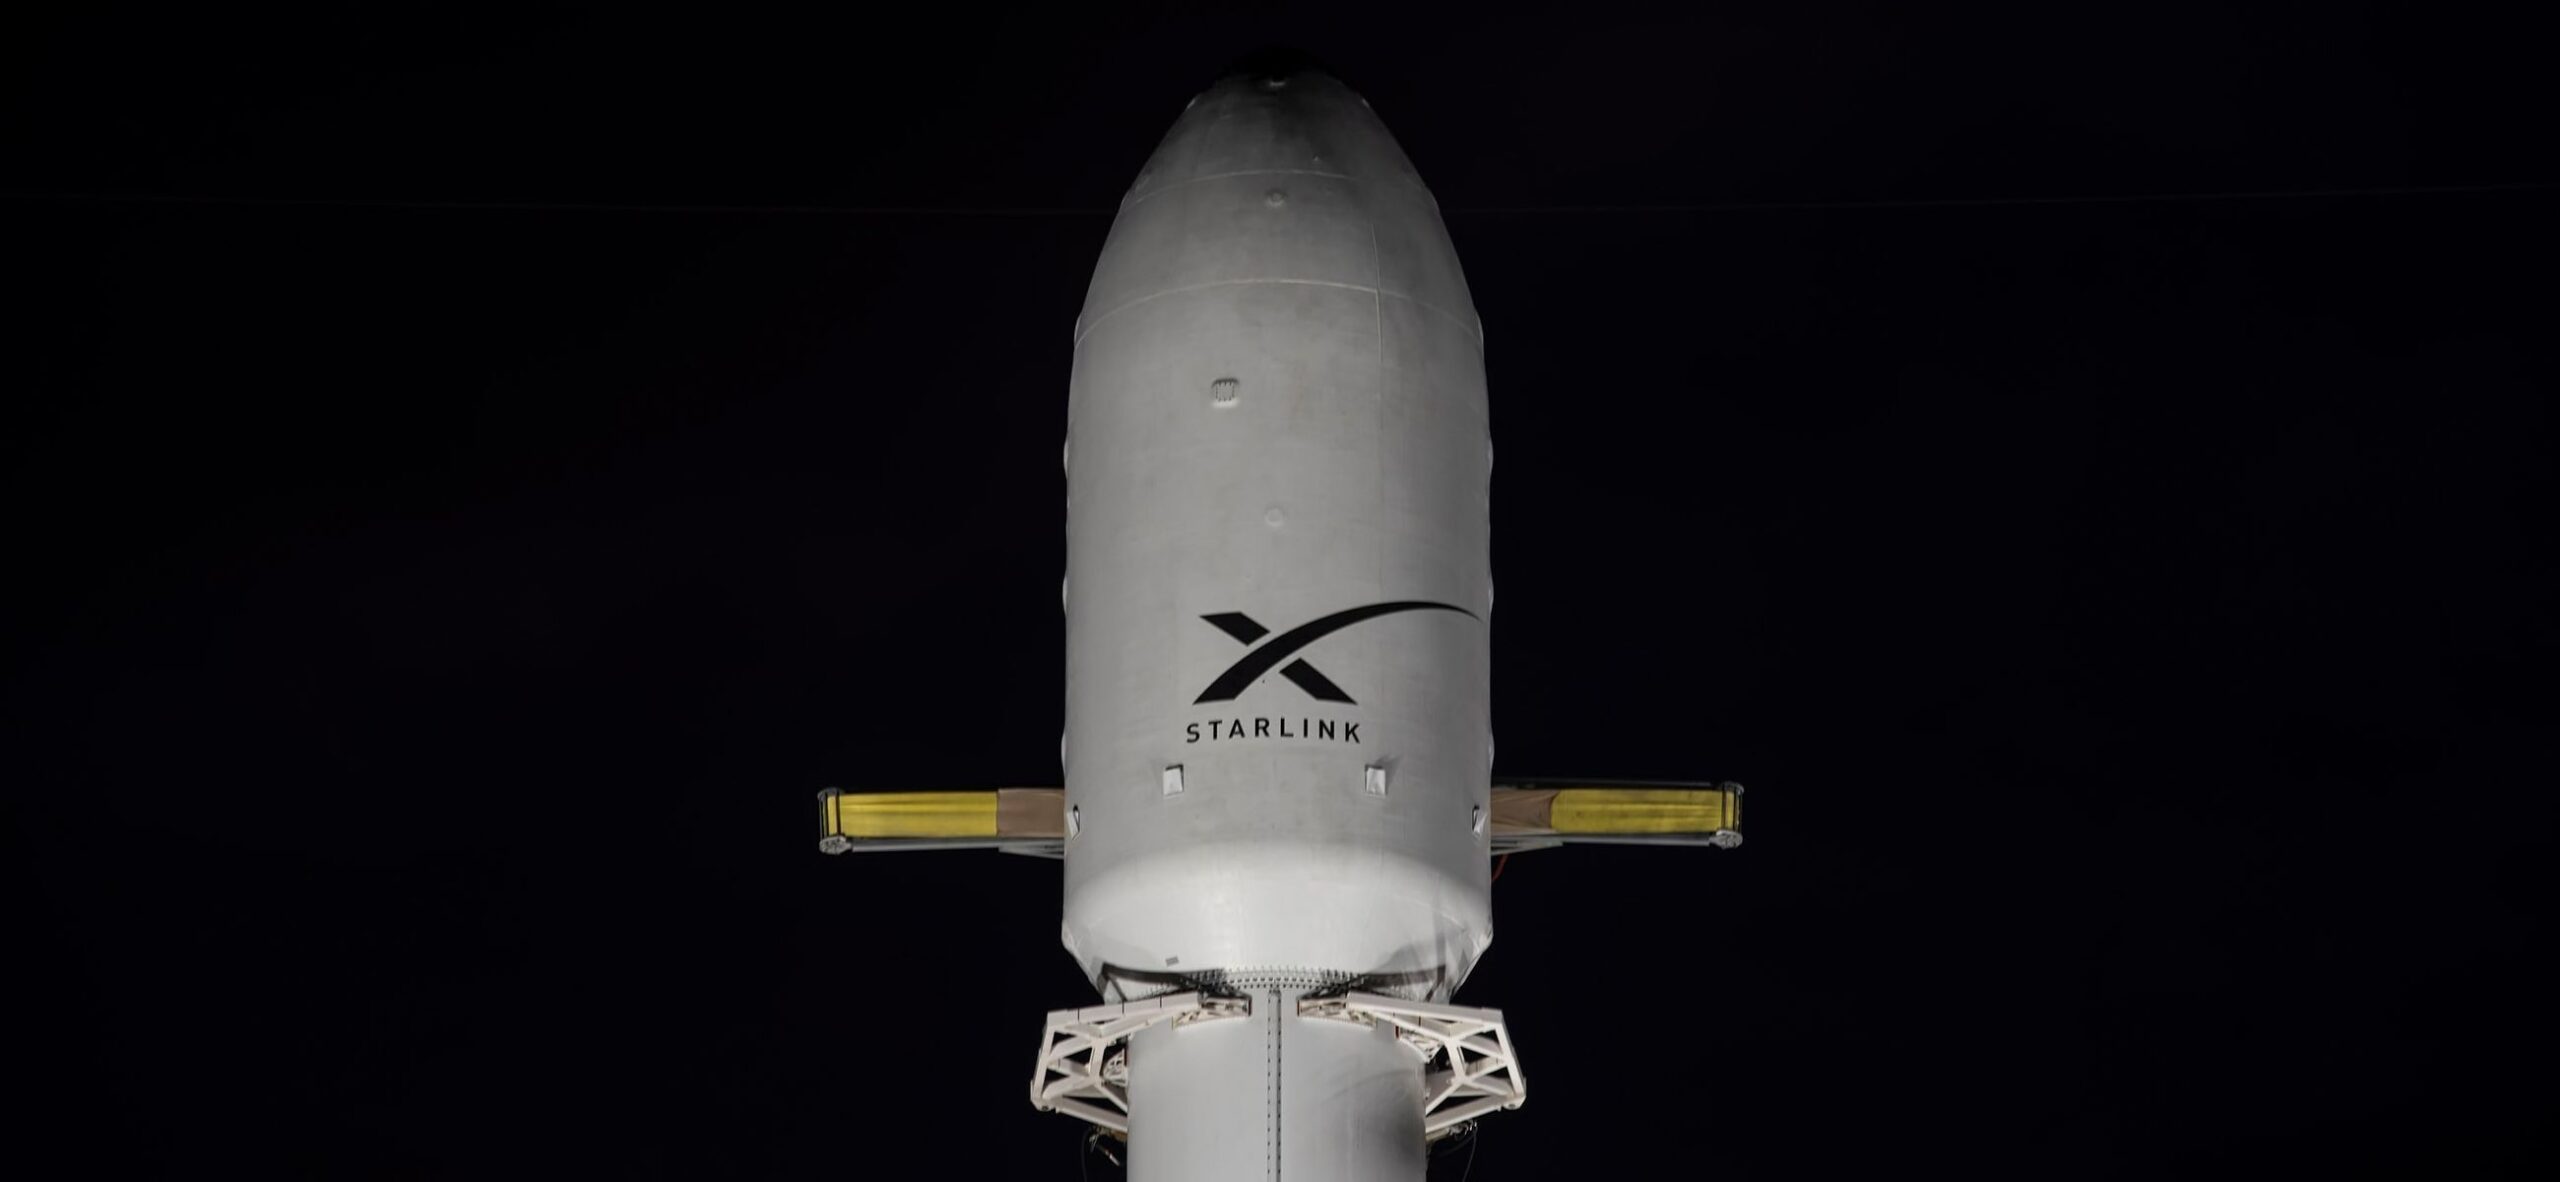 SpaceX laukaisee Falcon 9 -raketin Starlink-tehtävälle Cape Canaveralista